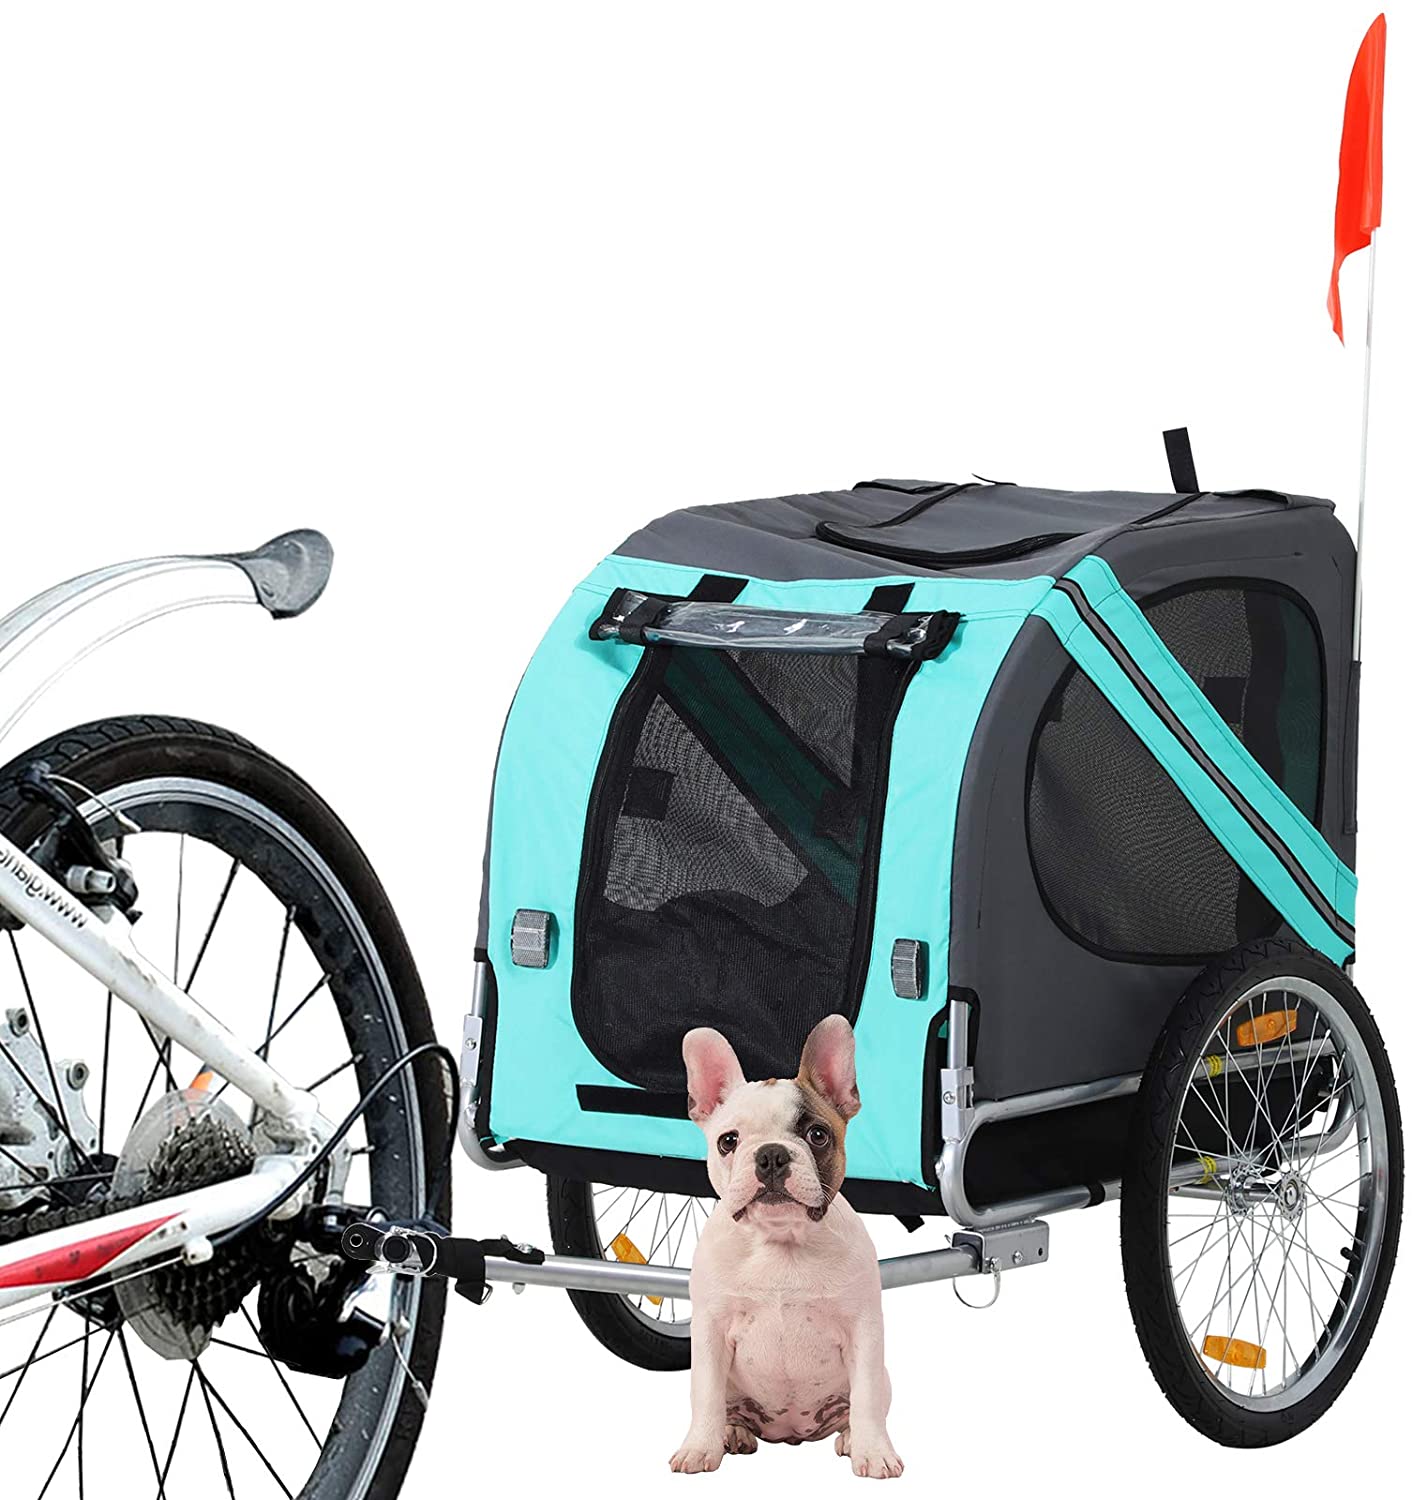  Pawhut Remolque Bicicleta Perros Mascota con Anillo Bandera Reflector de Seguridad Remolque Bici Cabina 78x55x65cm 